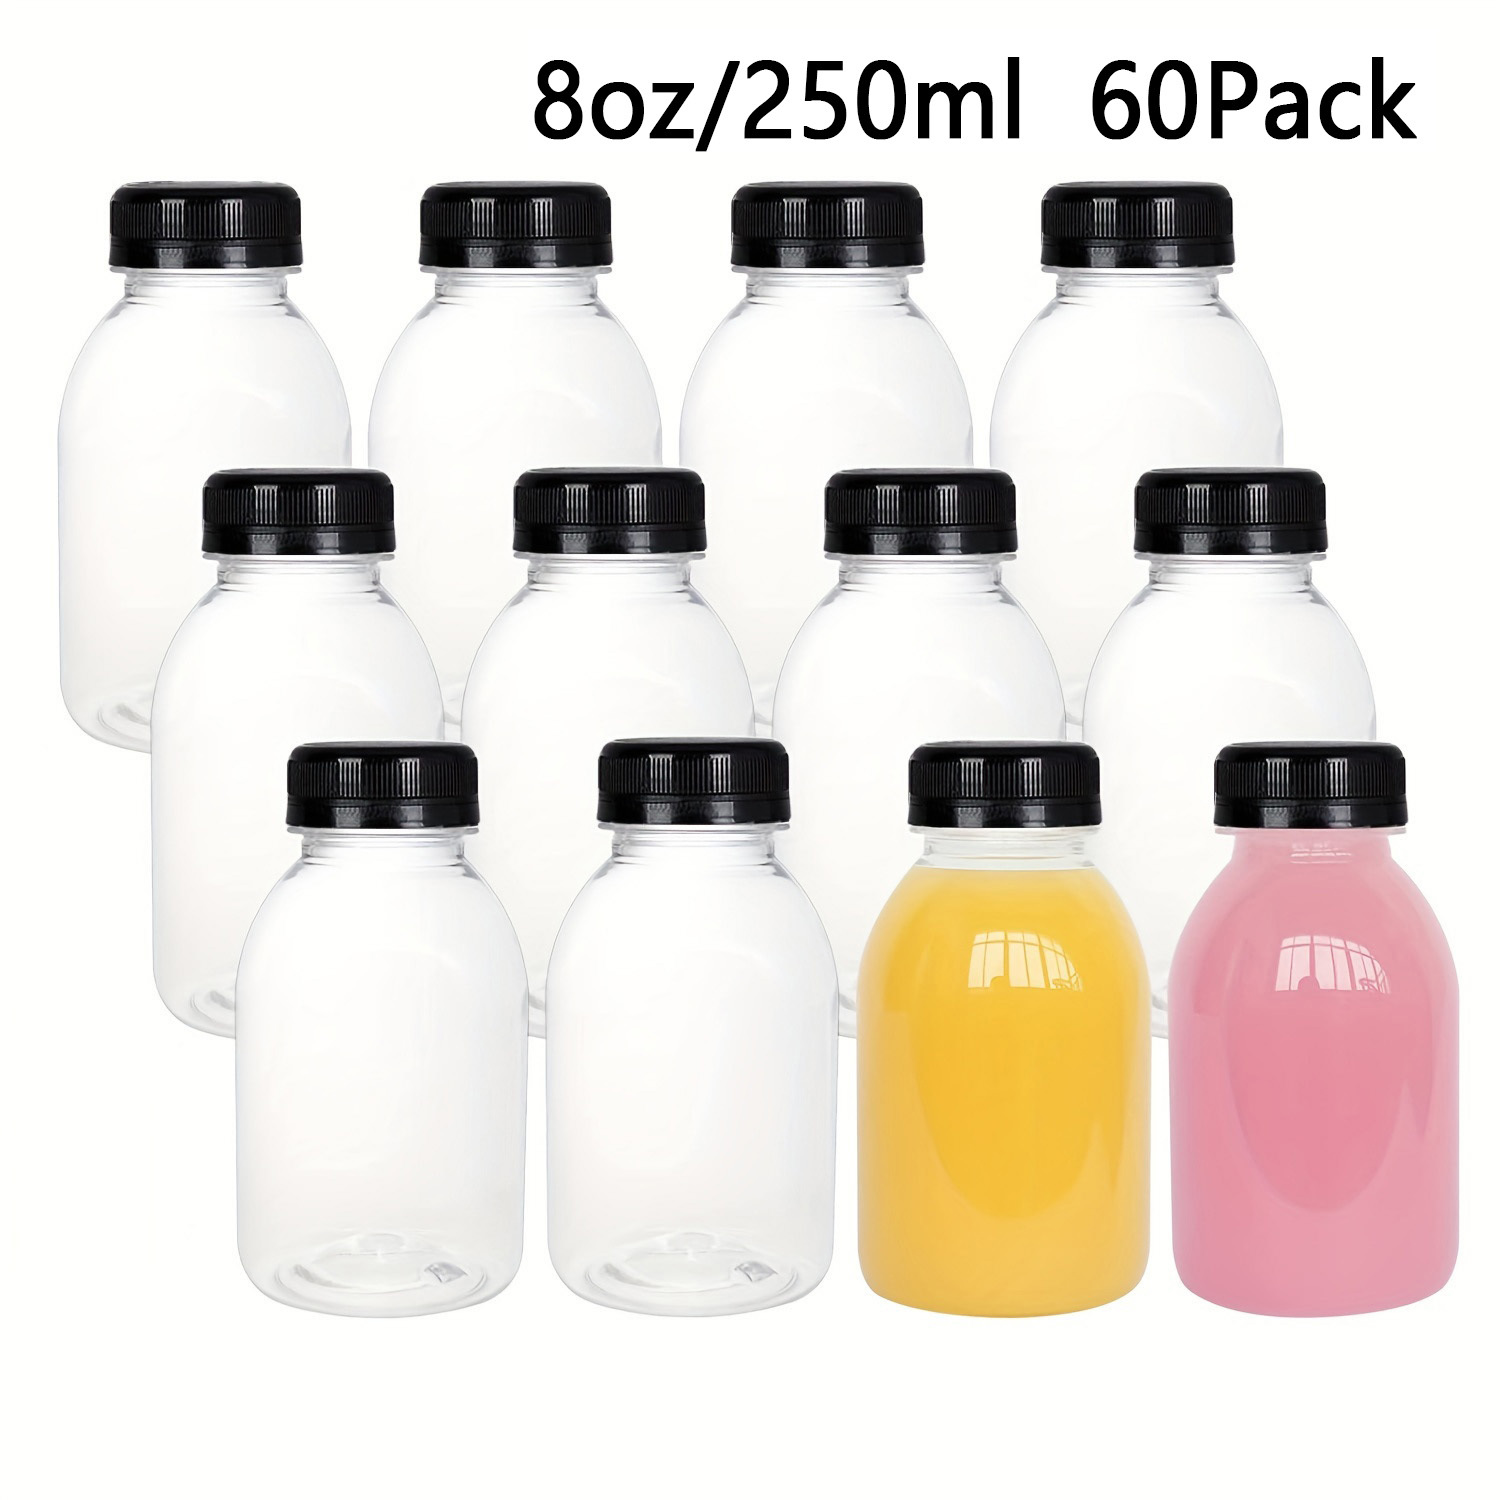 Water Bottle With Lid Leak proof Clear Plastic Juice Bottles - Temu